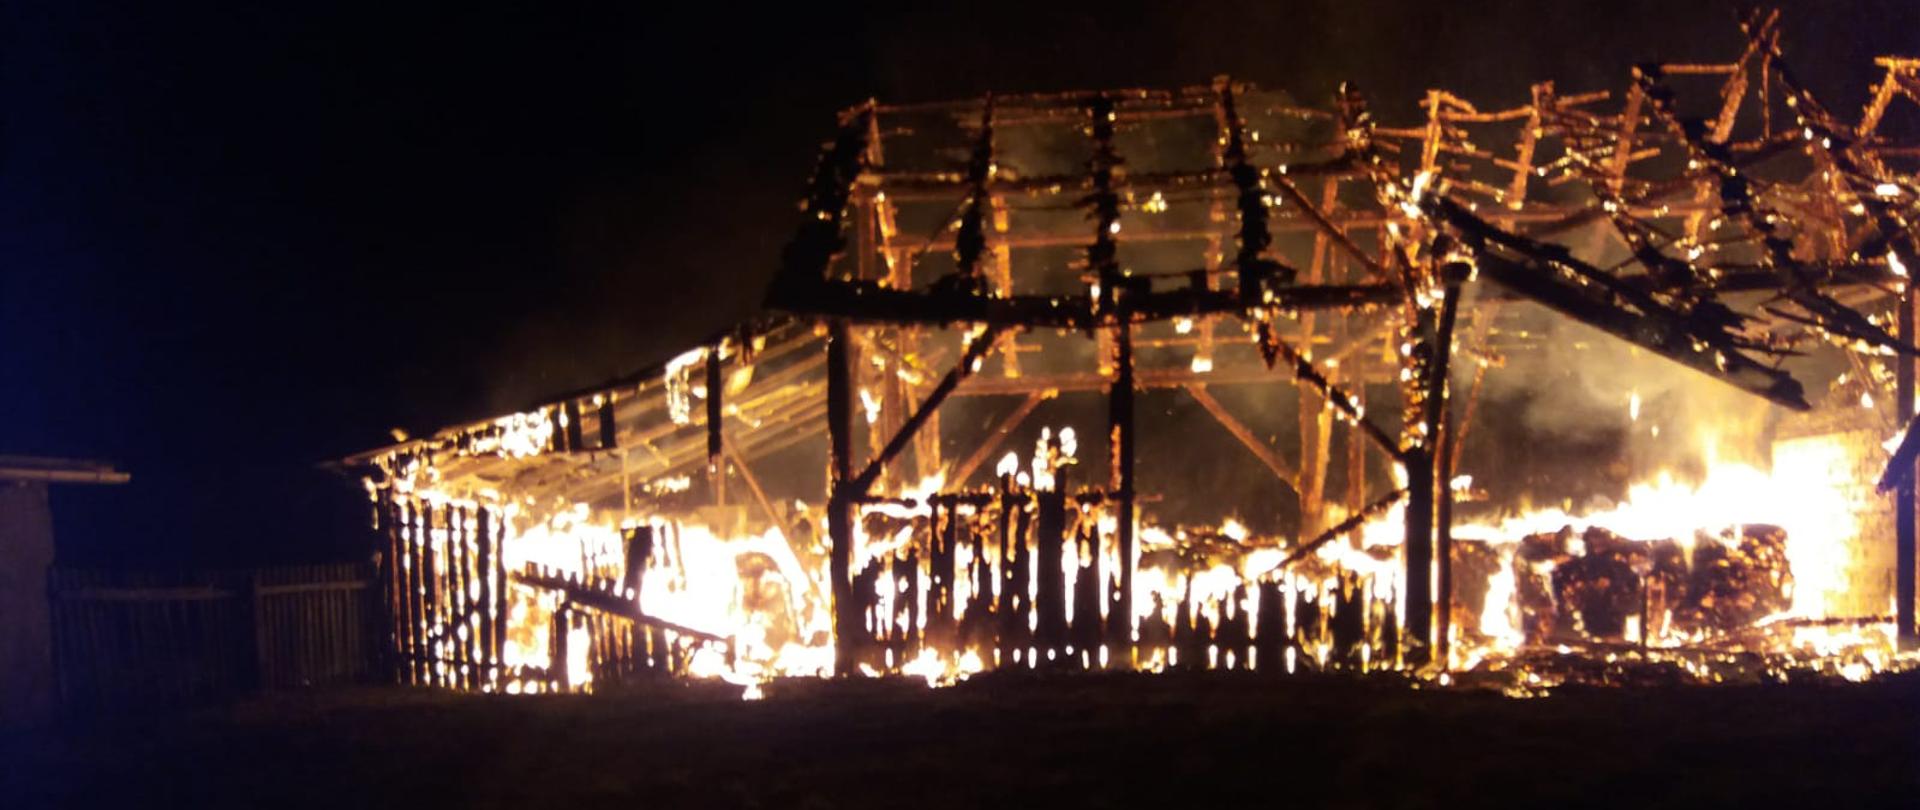 na zdjęciu widać palącą się konstrukcję nośną stodoły, pożar w pełni rozwinięty.